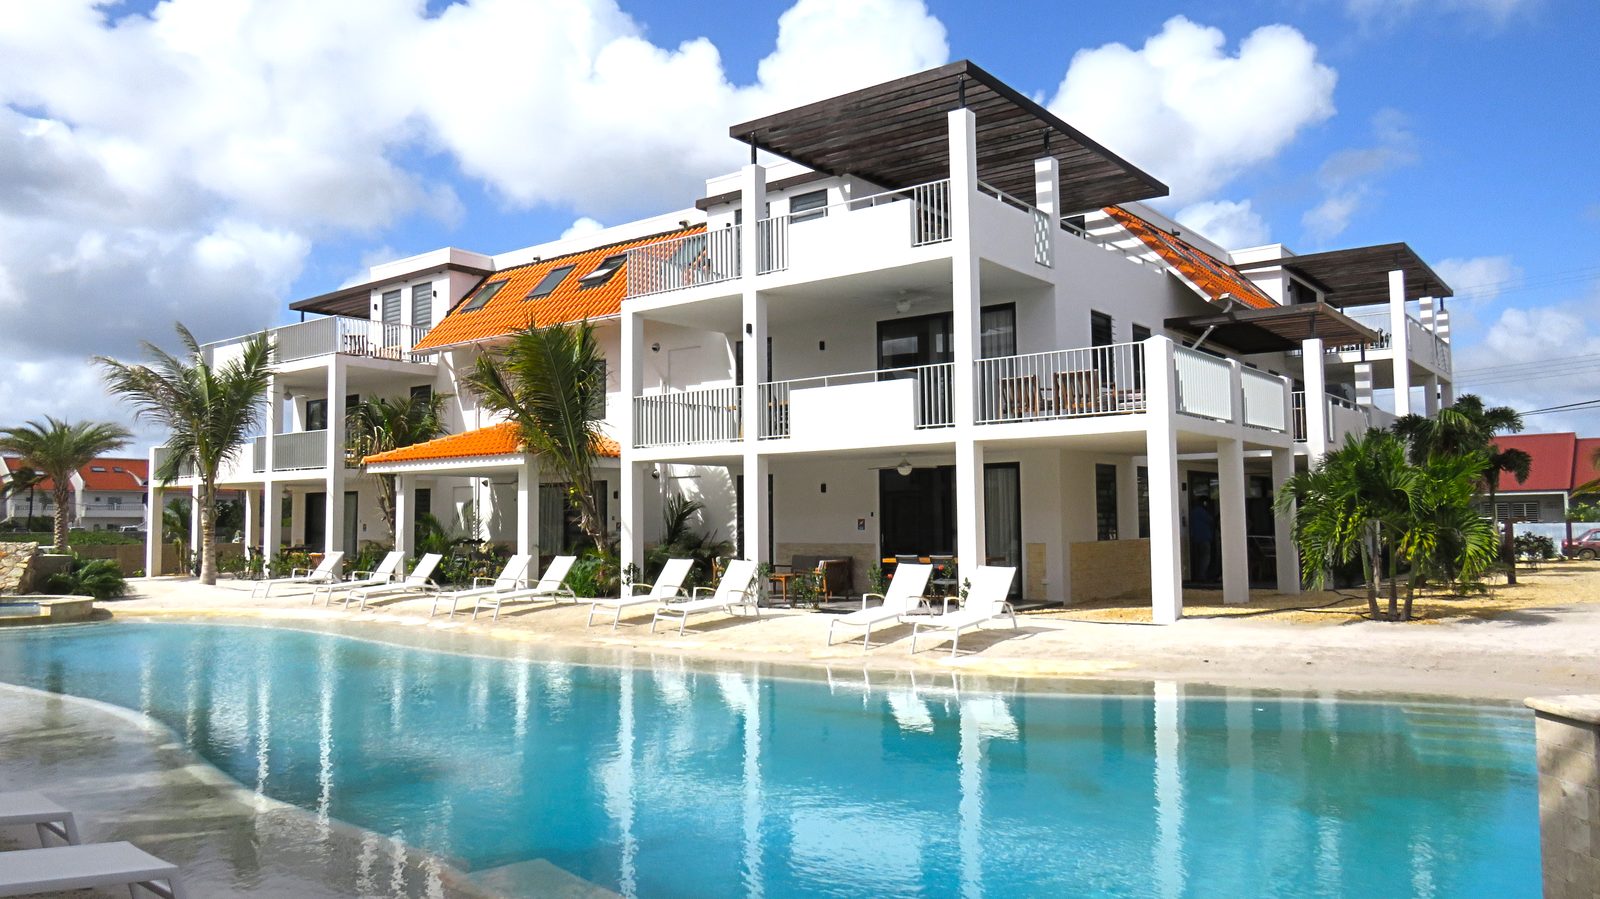 Vous désirez séjourner à Bonaire ? Choisissez Resort Bonaire : un nouveau complexe luxueux avec des appartements dotés de tout ce dont vous avez besoin.